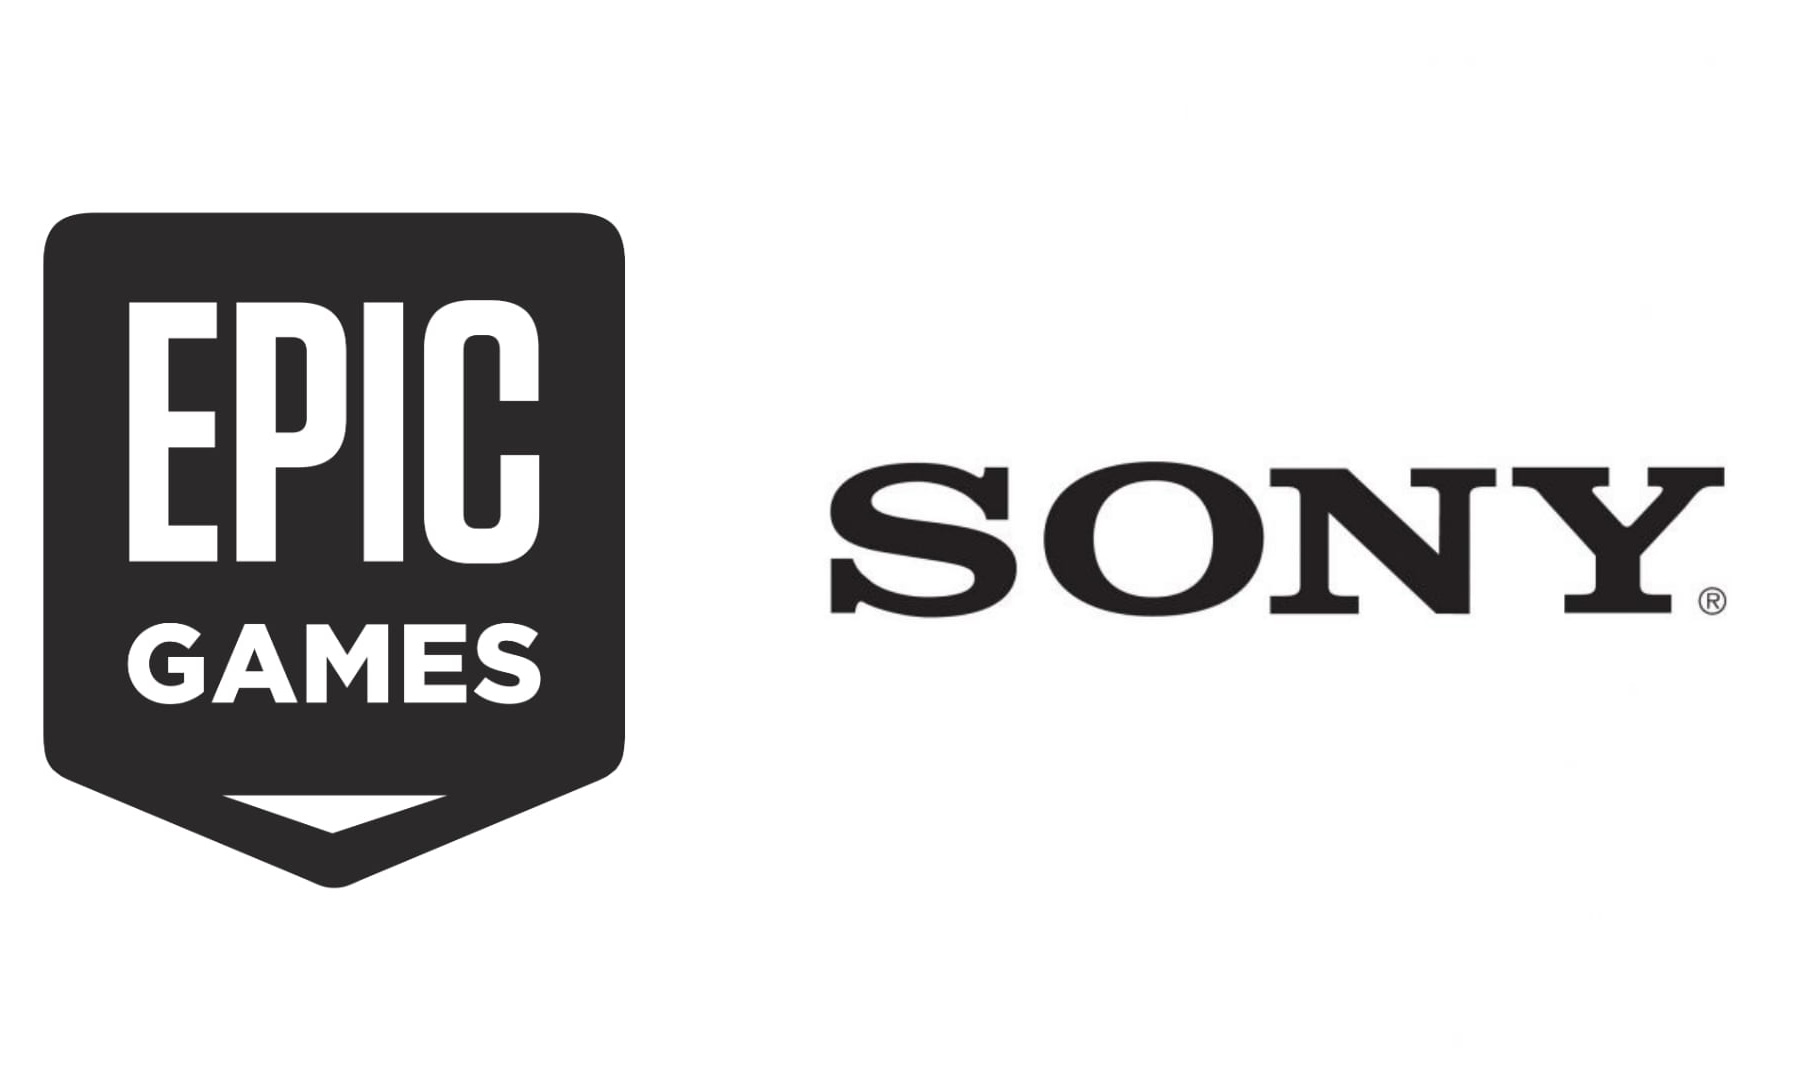 SONY 向 Epic Games 投资 10 亿美金